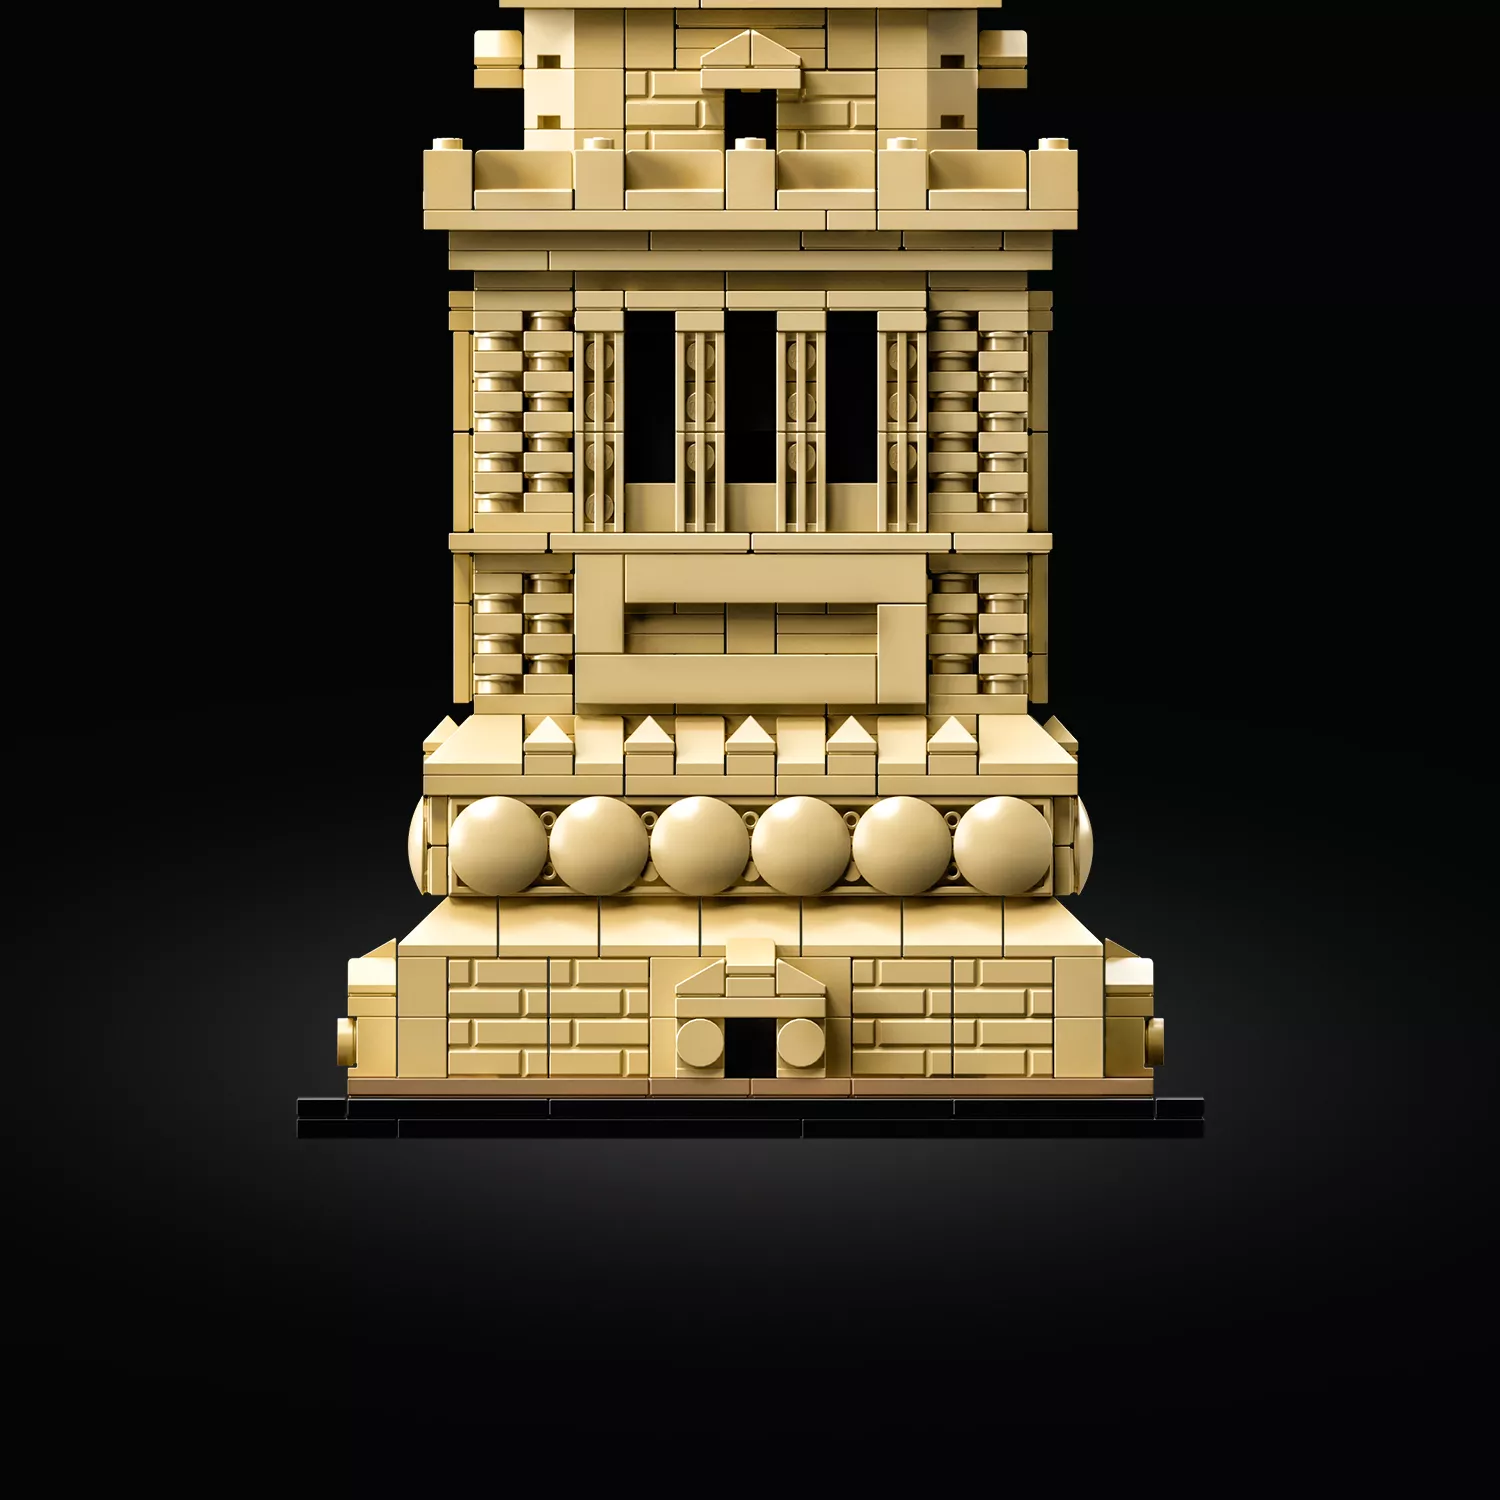 LEGO 21042 Architecture Freiheitsstatue